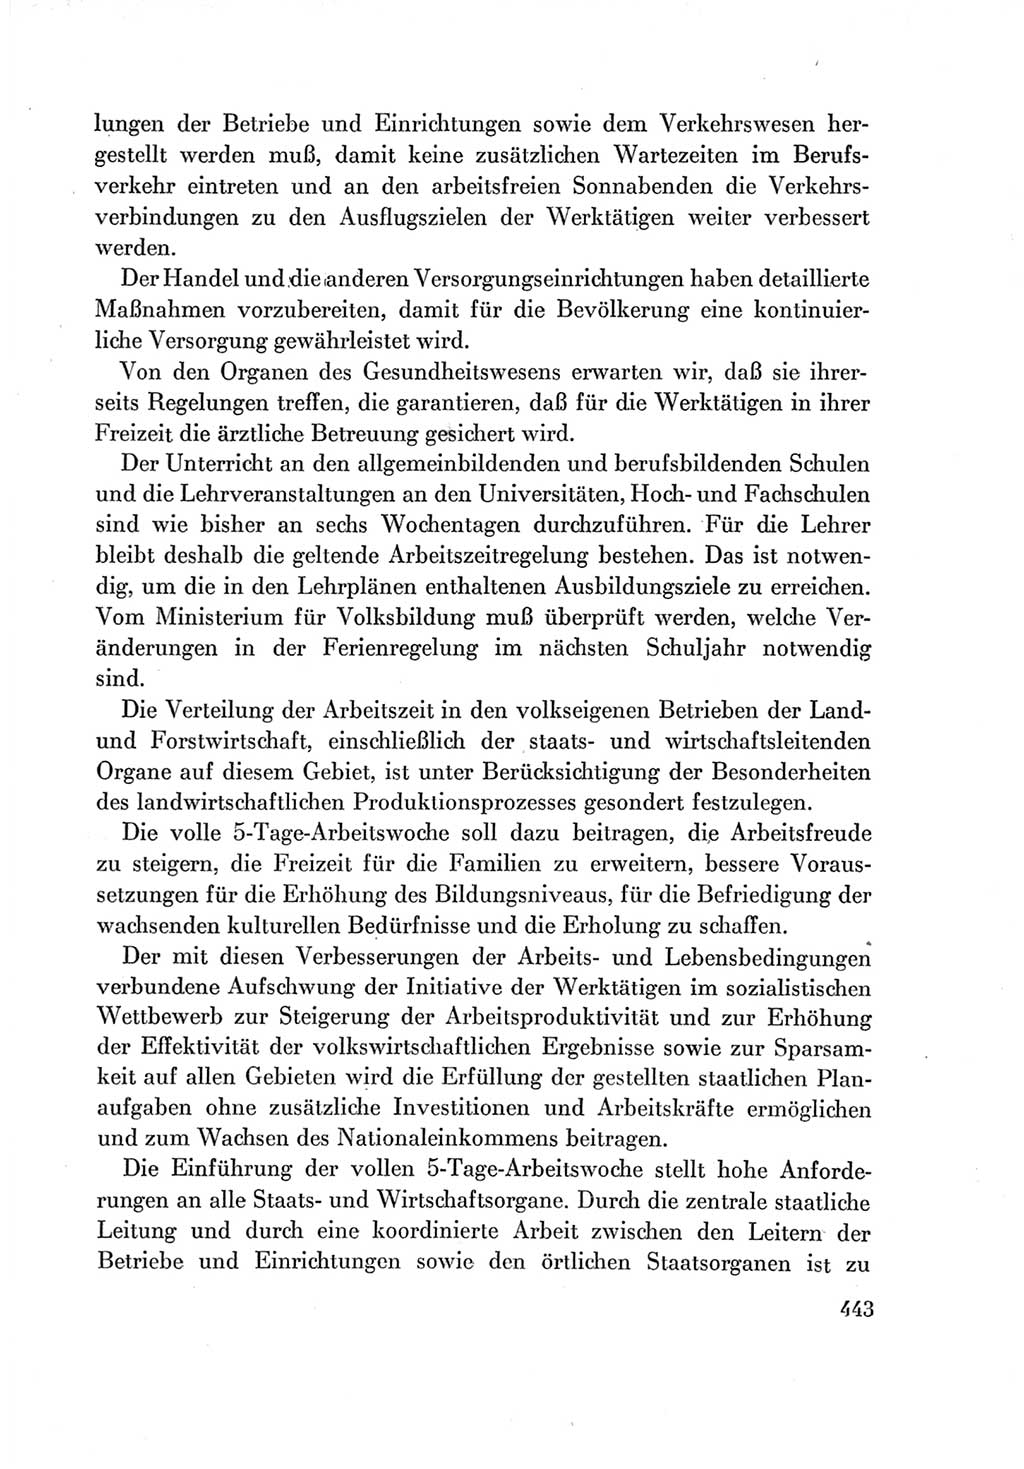 Protokoll der Verhandlungen des Ⅶ. Parteitages der Sozialistischen Einheitspartei Deutschlands (SED) [Deutsche Demokratische Republik (DDR)] 1967, Band Ⅰ, Seite 443 (Prot. Verh. Ⅶ. PT SED DDR 1967, Bd. Ⅰ, S. 443)